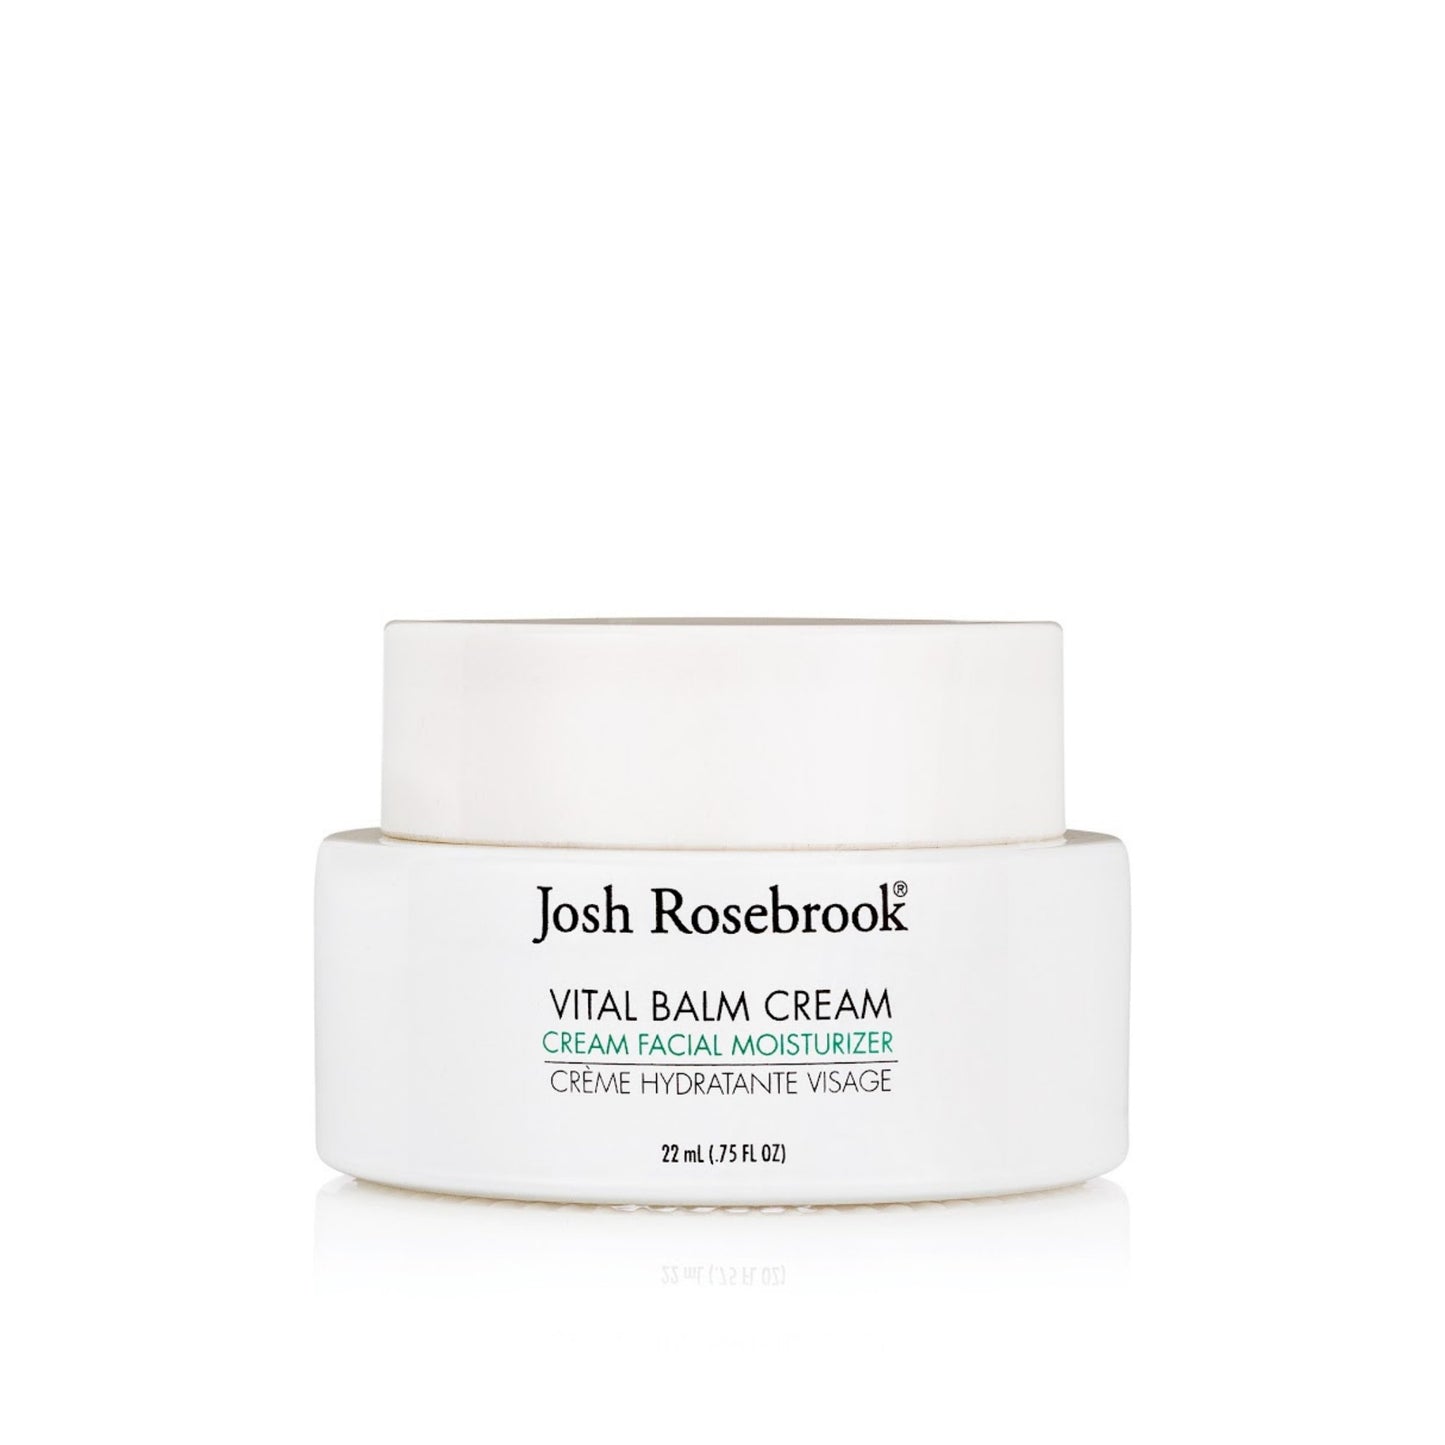 Josh Rosebrook - Josh Rosebrook Vital Balm Cream - ORESTA clean beauty simplified